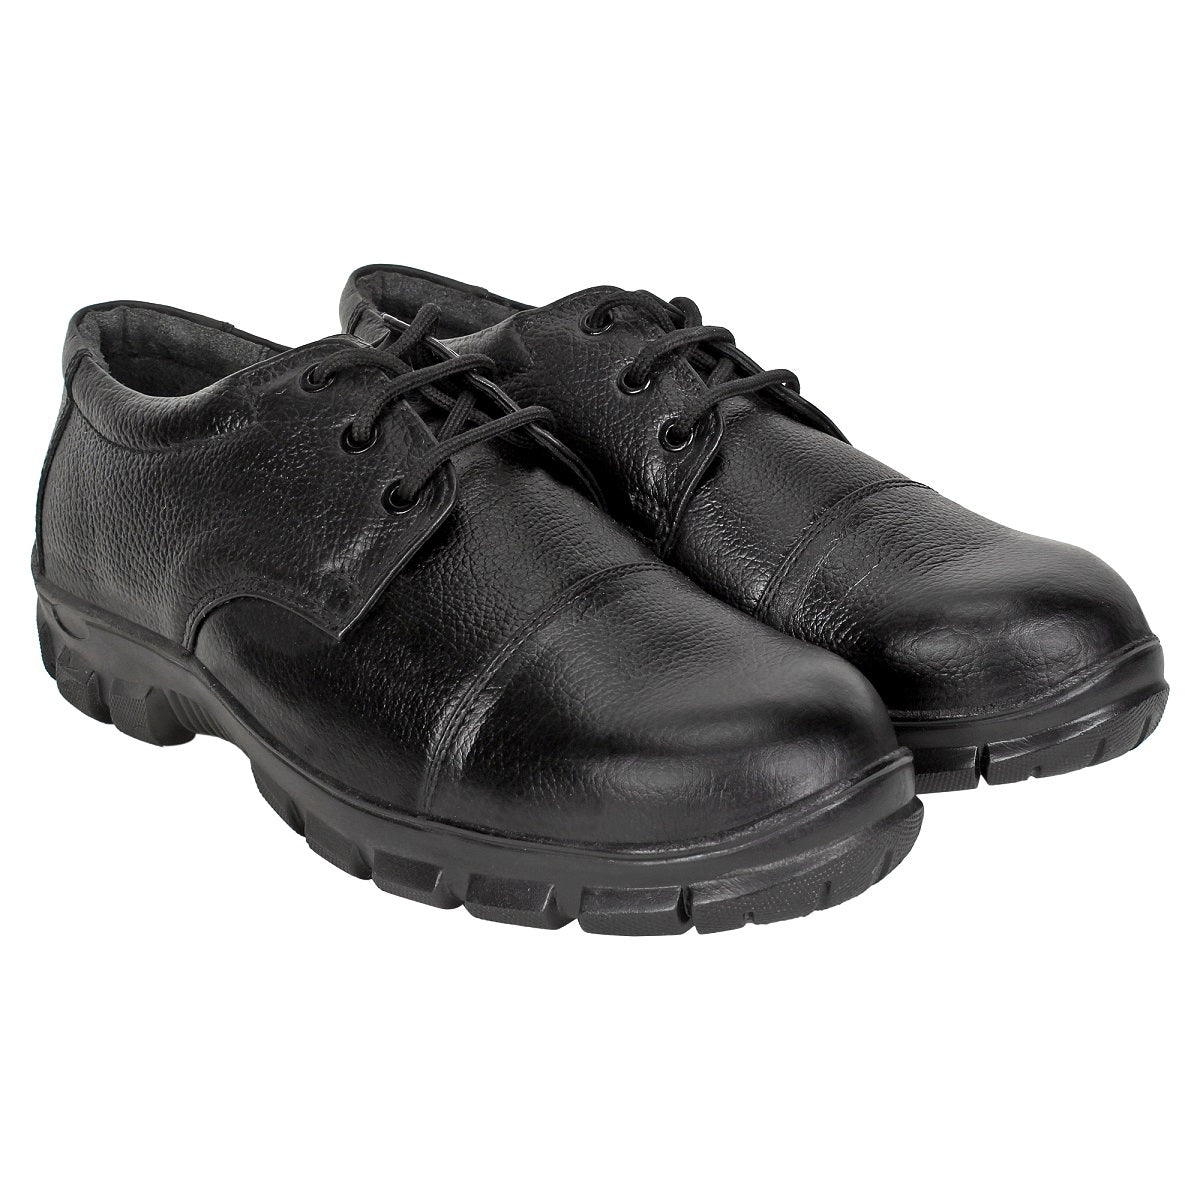 Formal Safety Shoes for Men - Defective